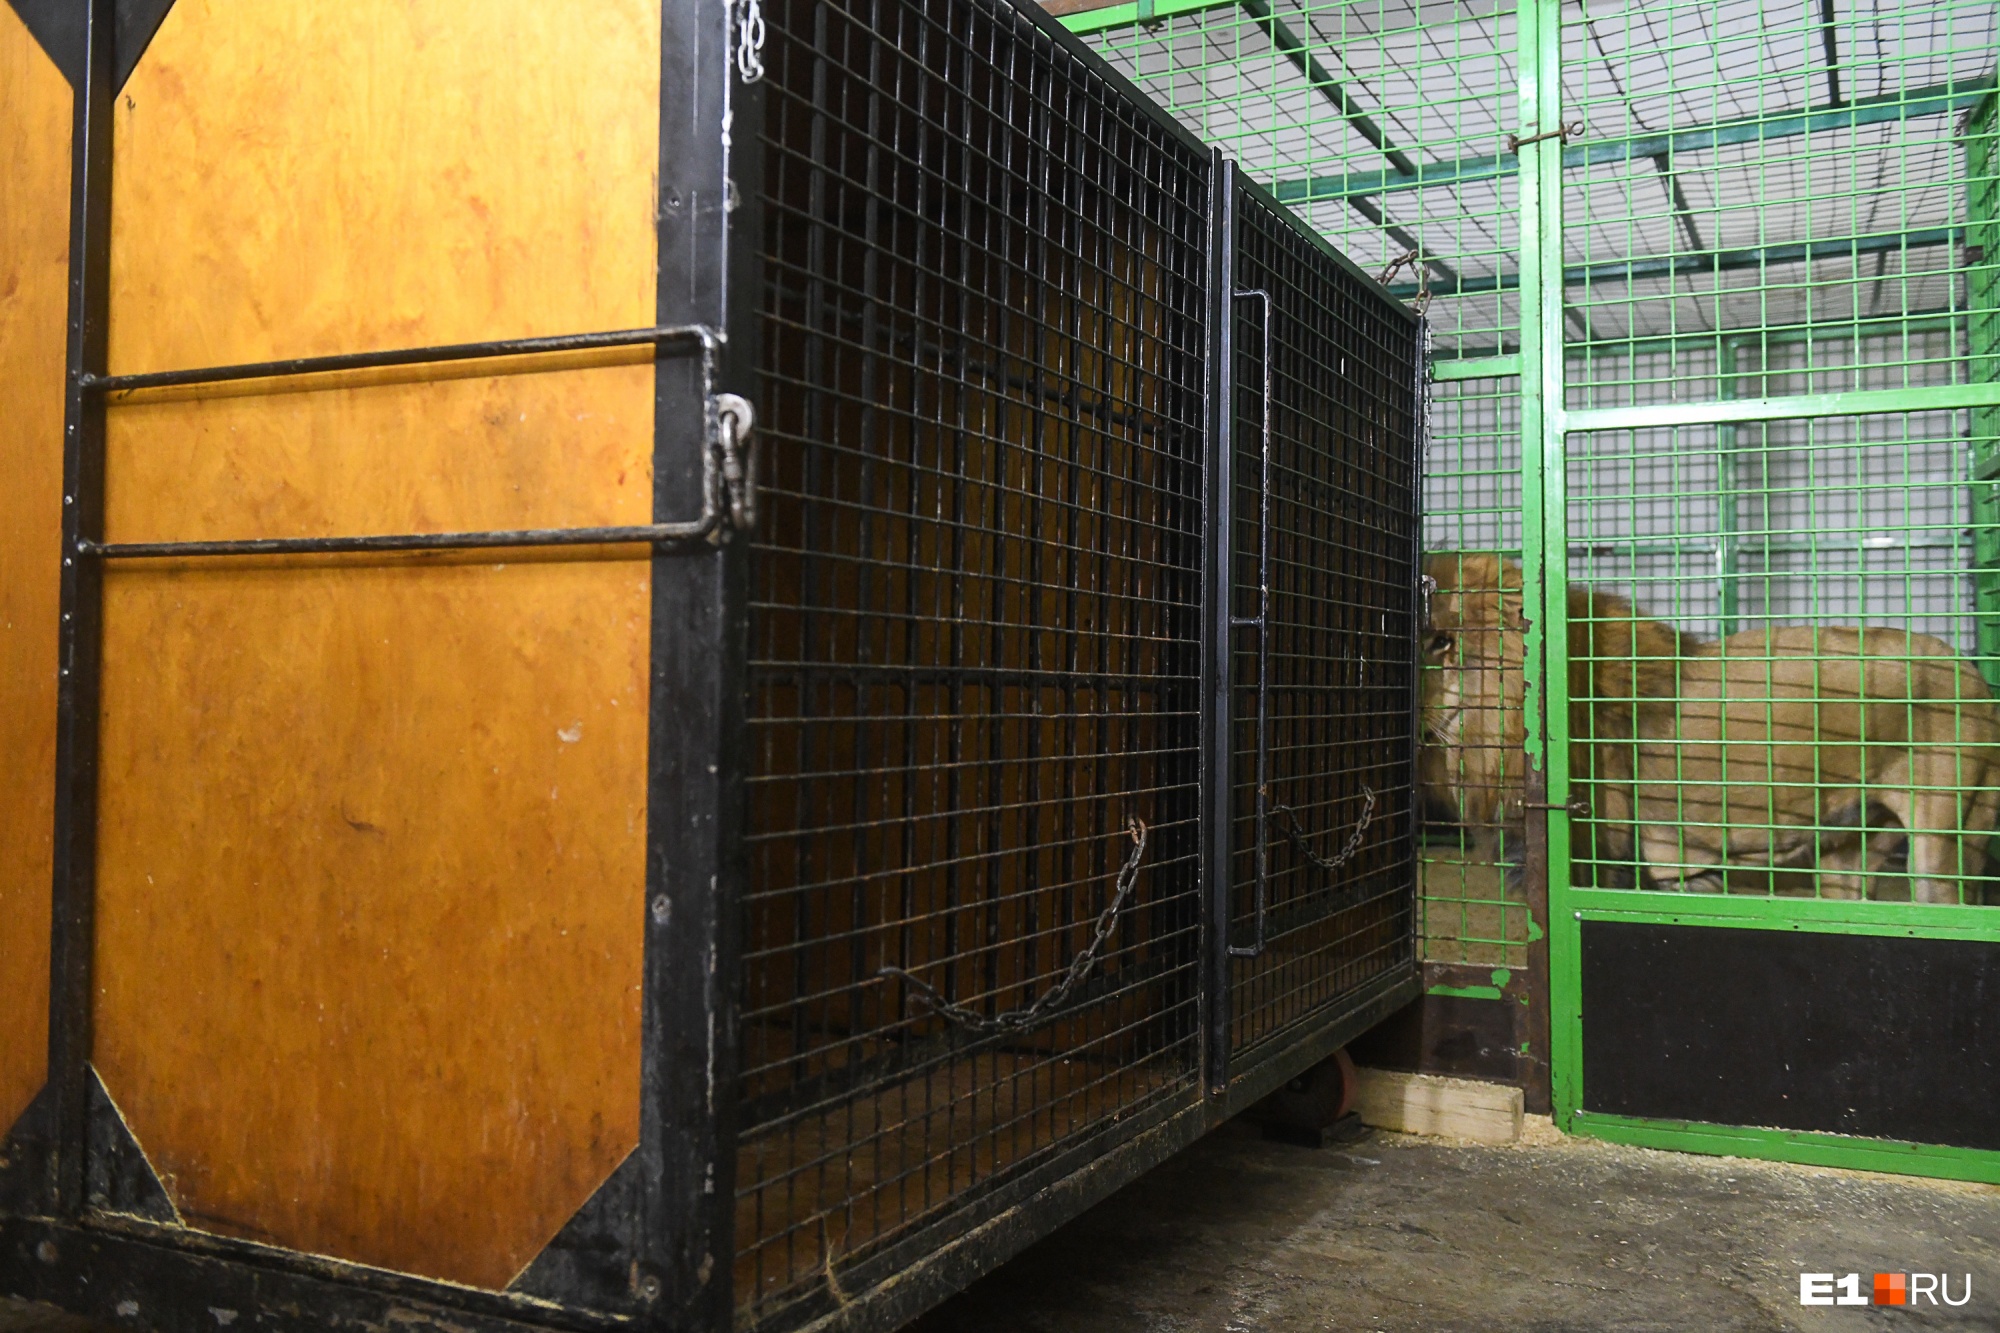 Пуму, напавшую на пьяных работников зоопарка Читы, запирали в туалете